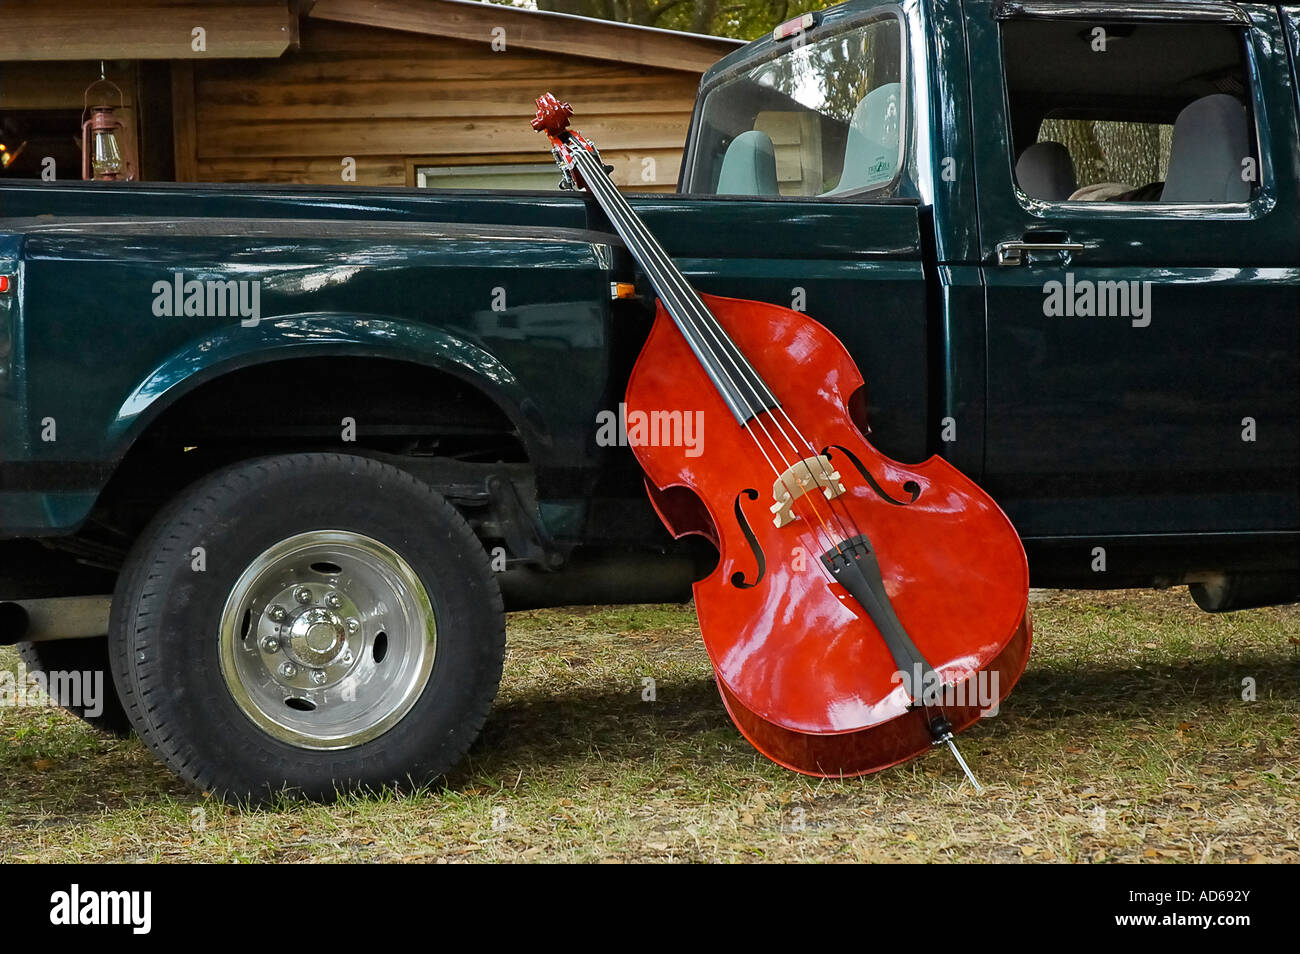 Violín bajo se inclina en camioneta durante el festival de música rural Foto de stock